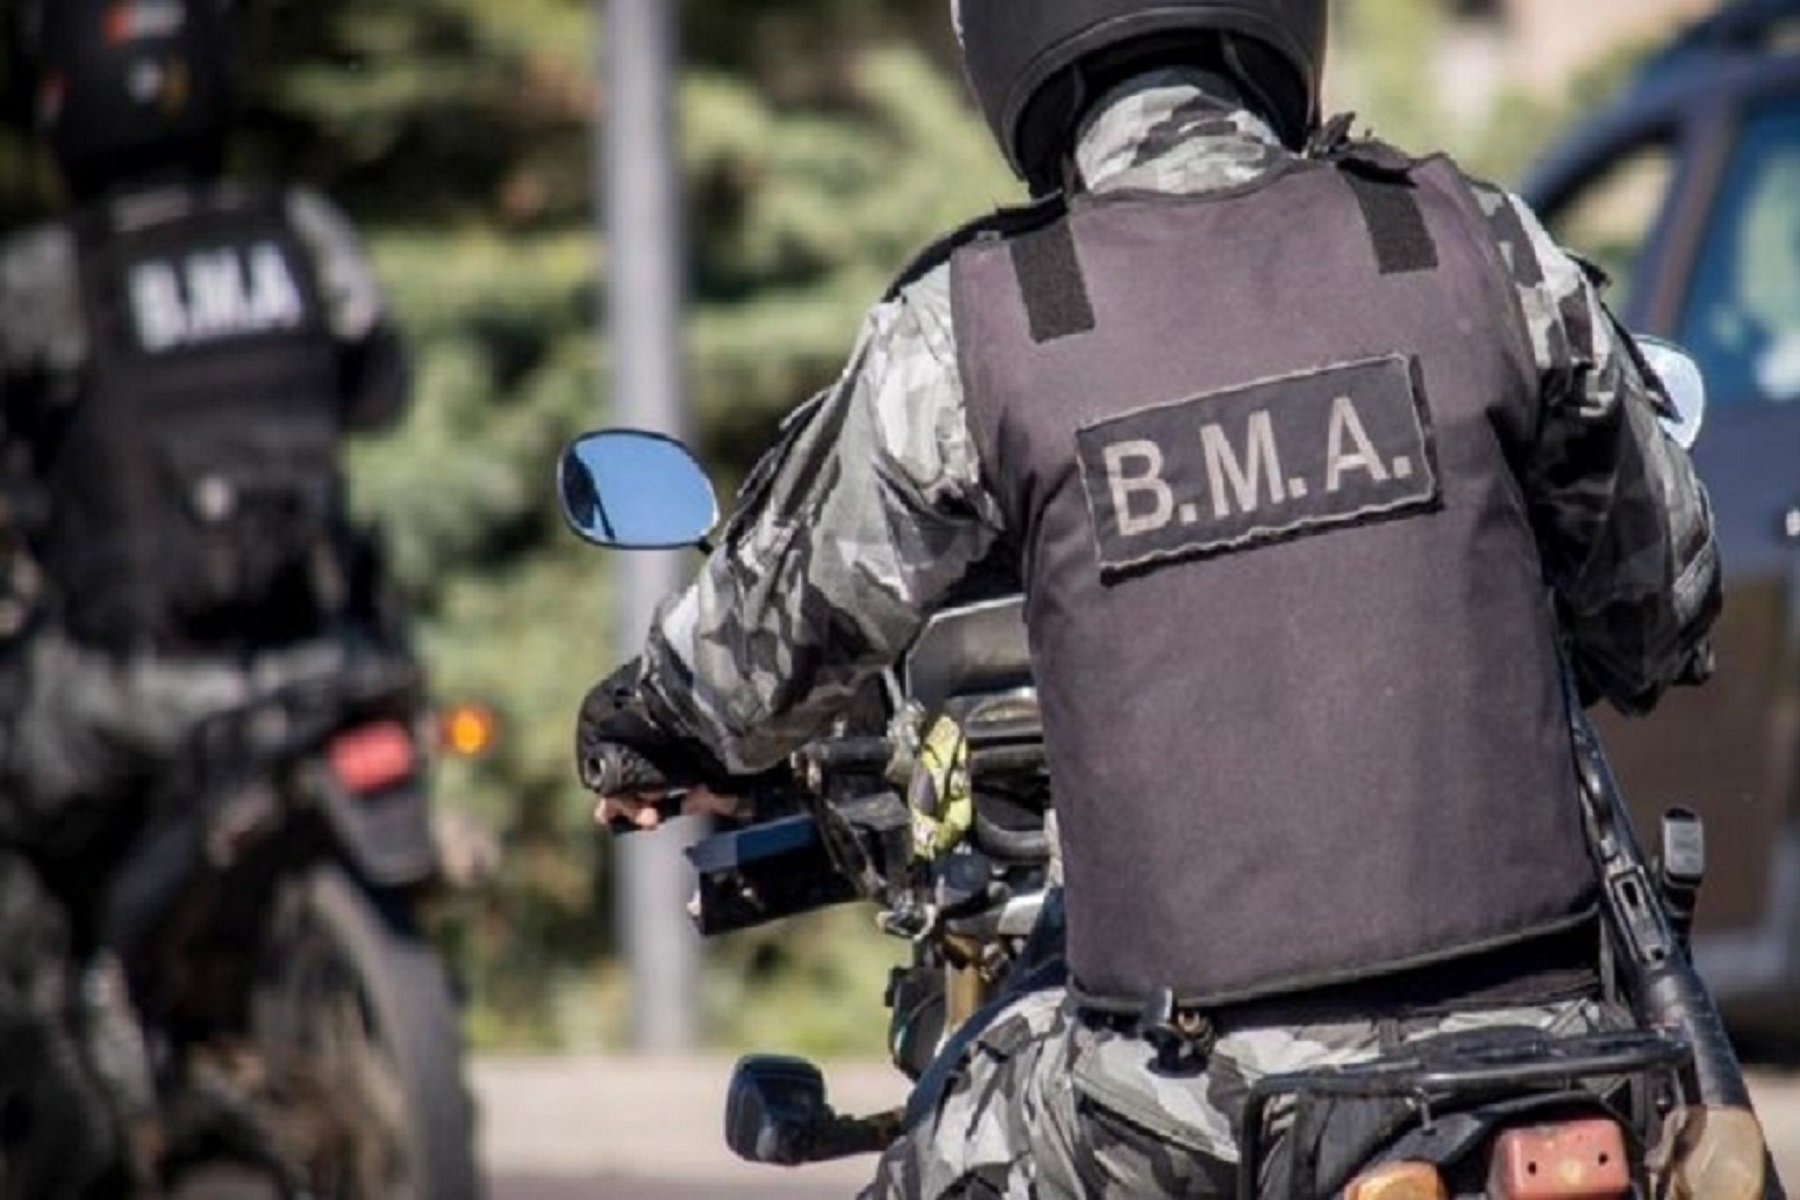  La moto es parte de la Brigada Motorizada de apoyo de la policía de Río Negro. Foto: gentileza.